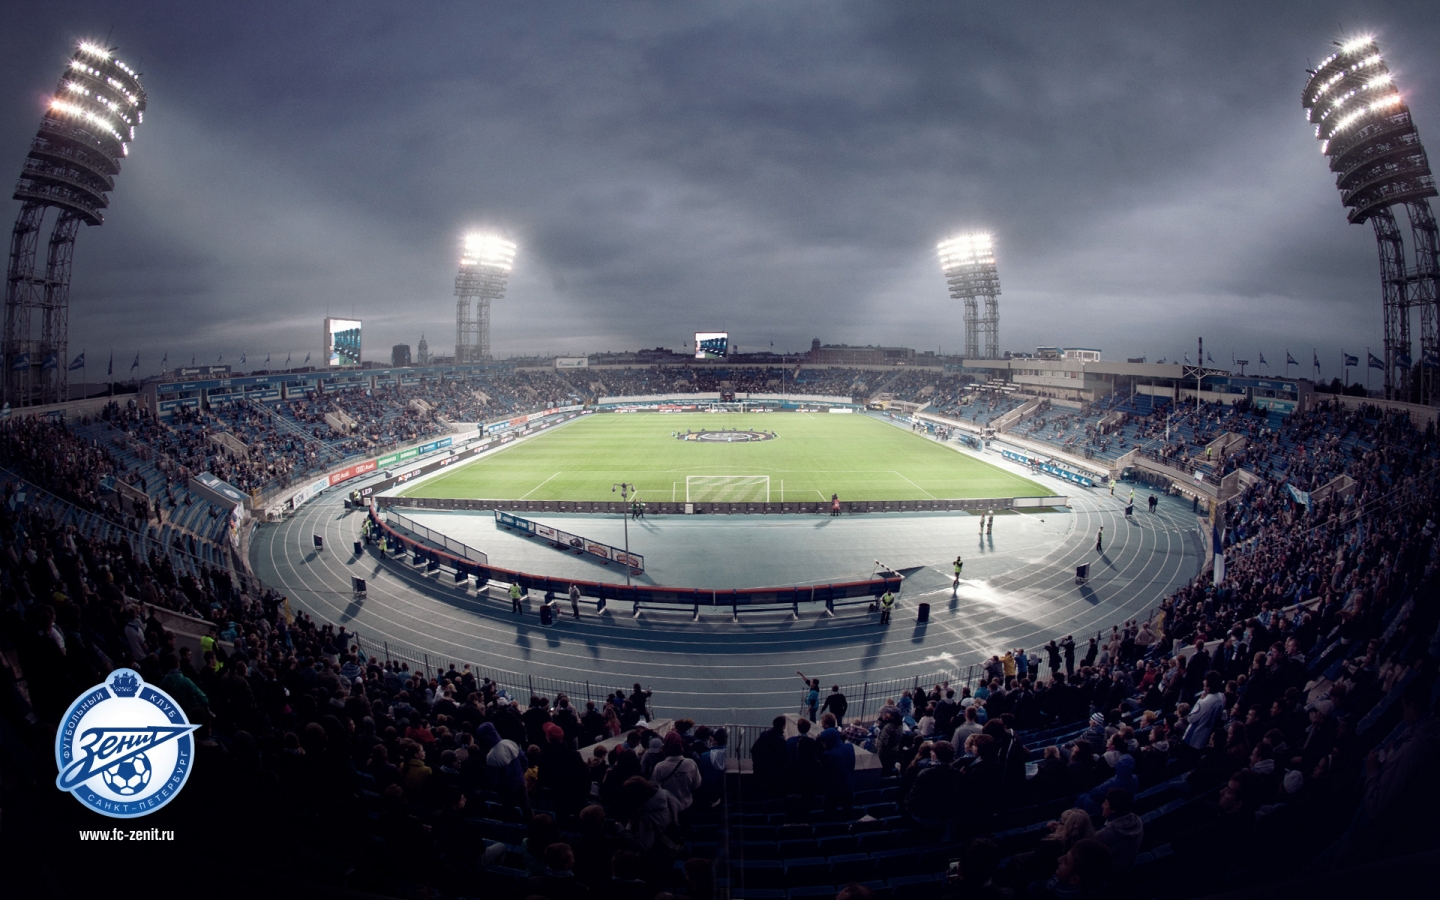 FC Zenit Stadium for 1440 x 900 widescreen resolution